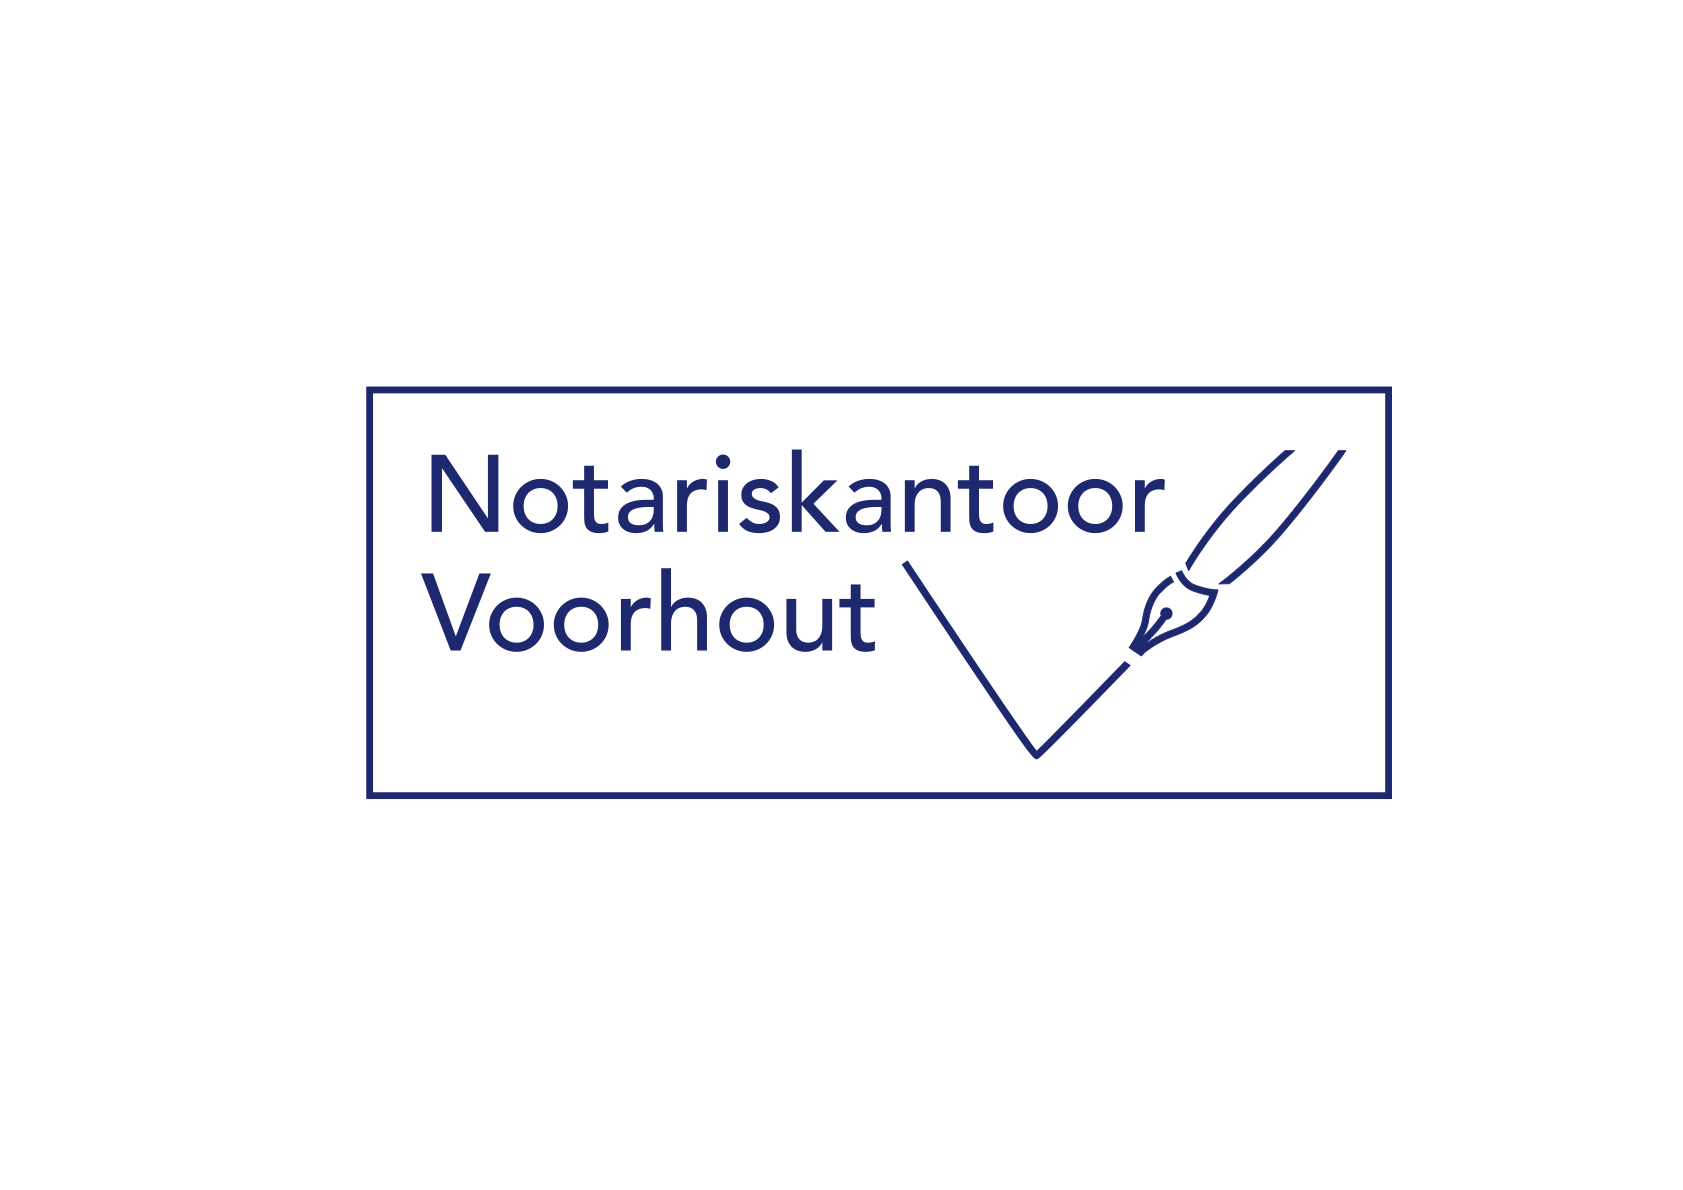 Notariskantoor Voorhout